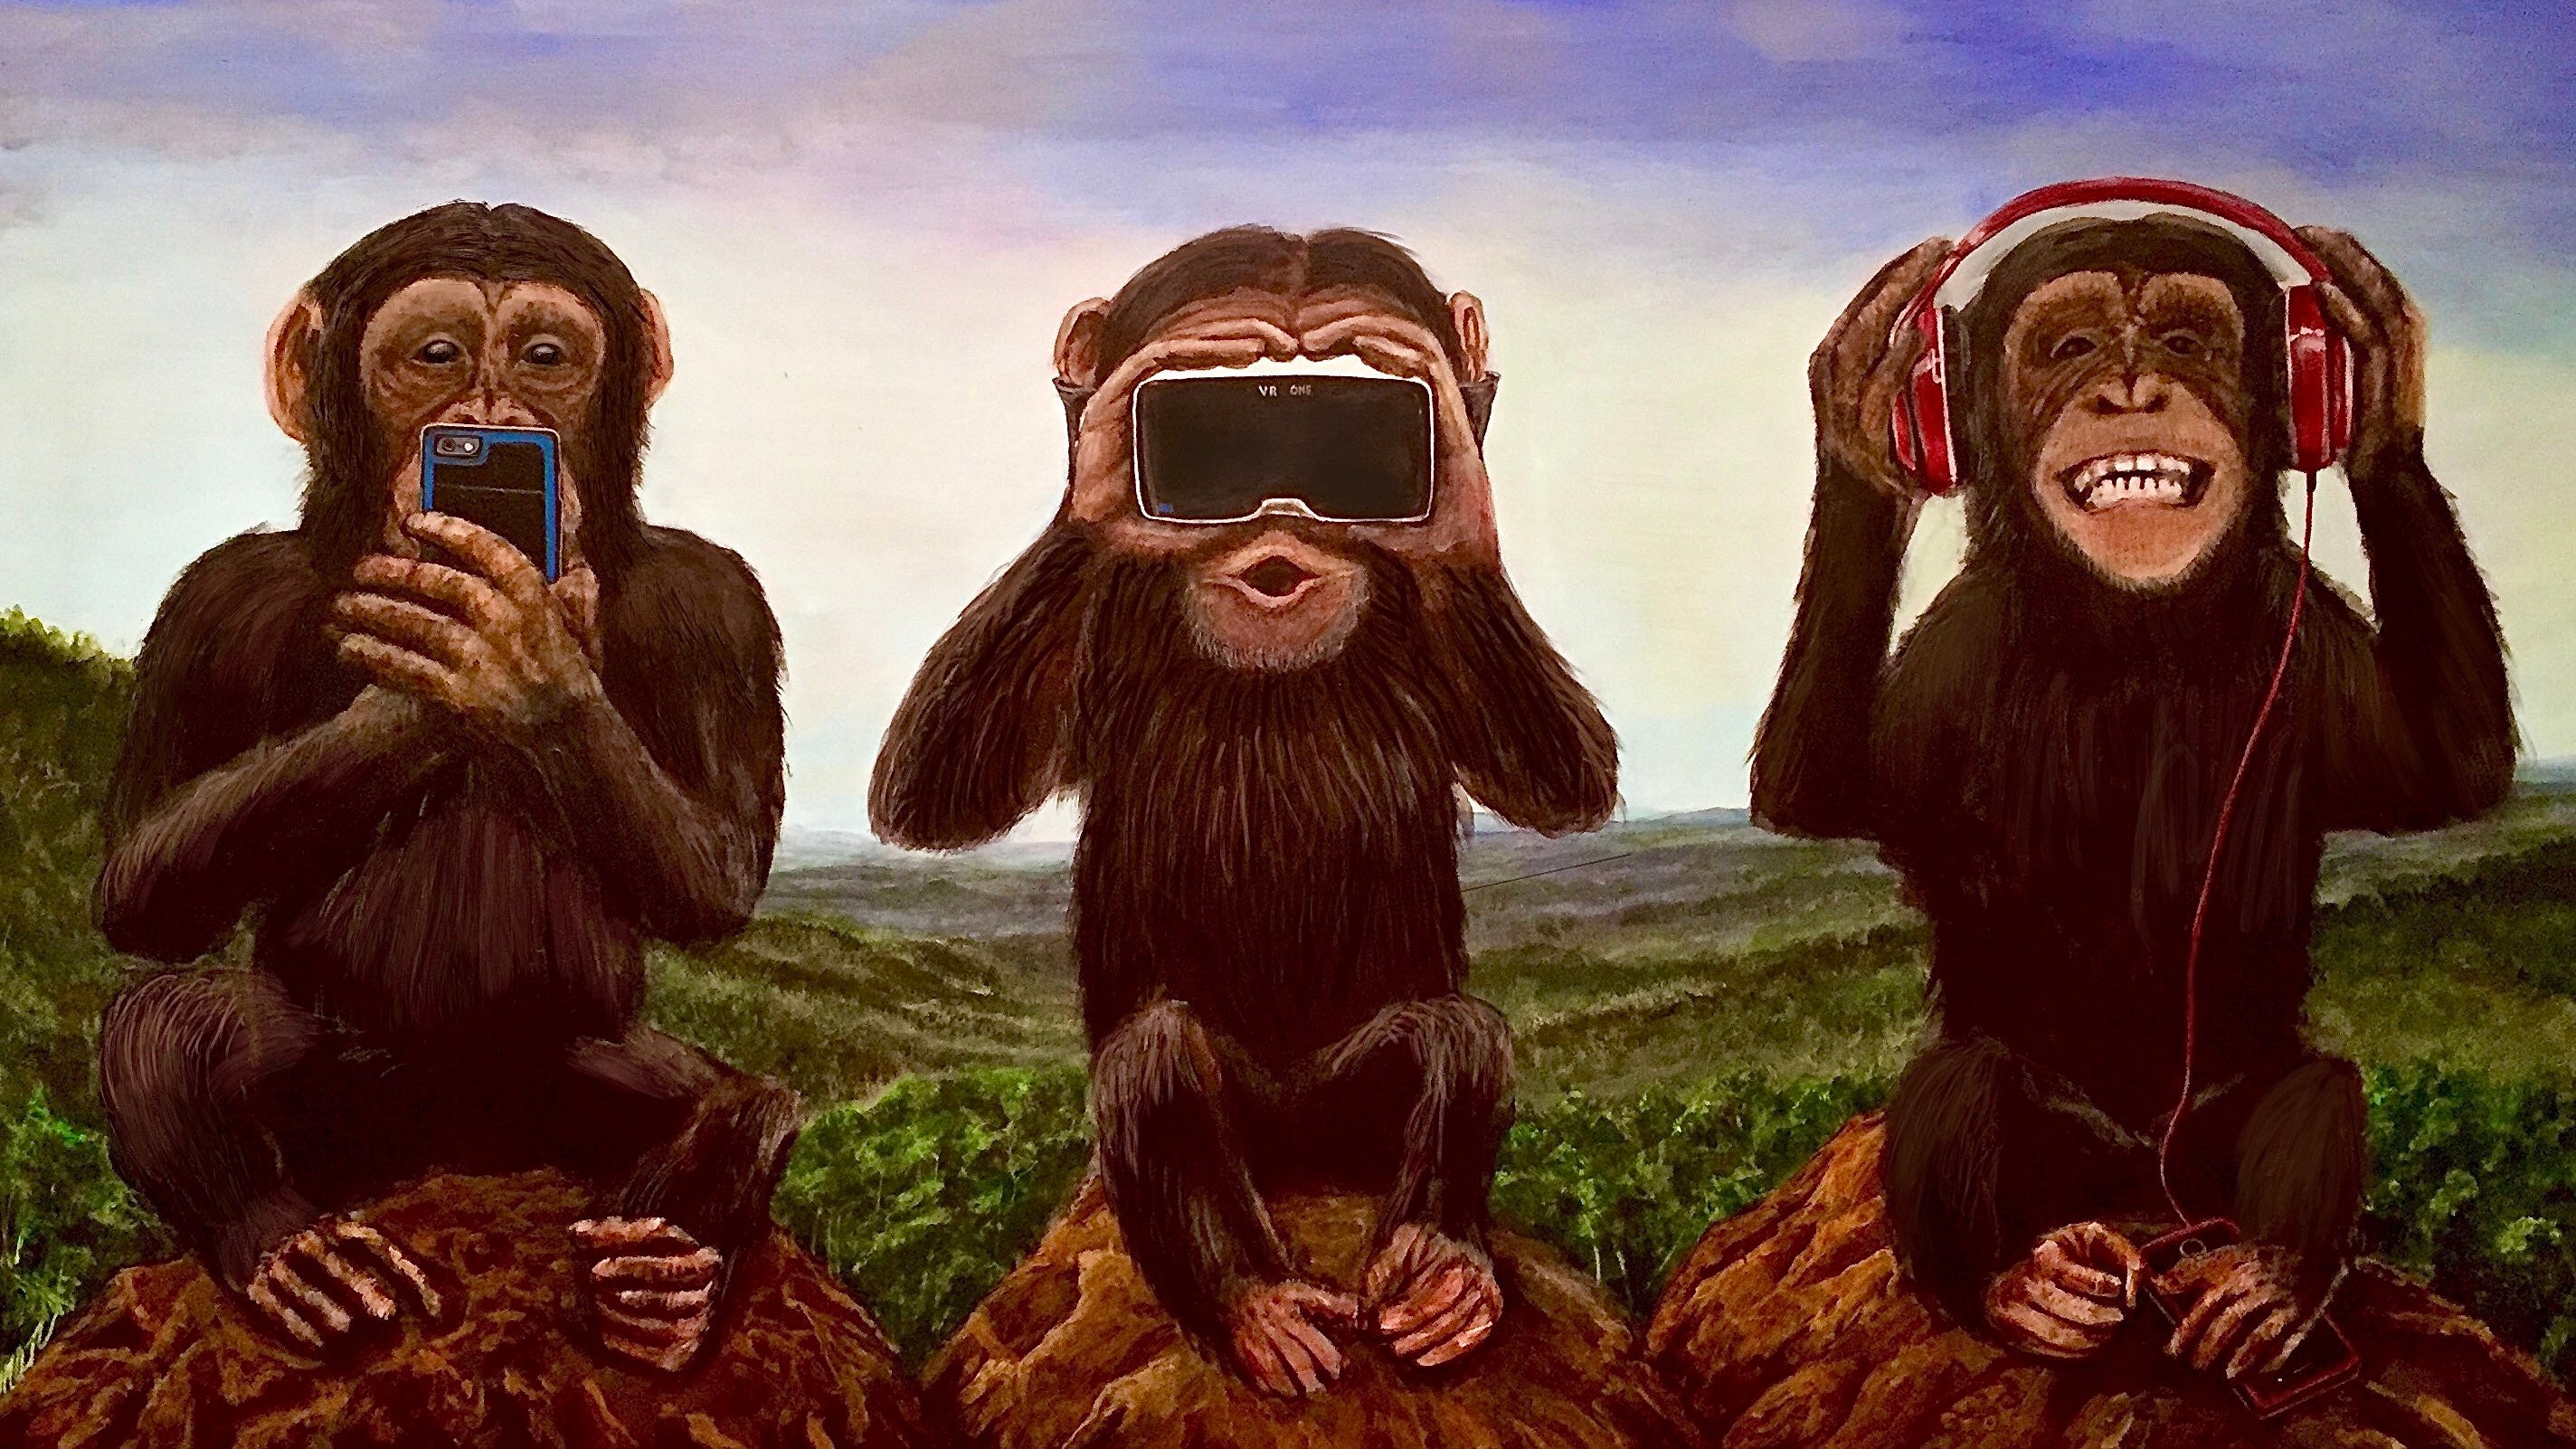 Не слышу не вижу не говорю обезьяны